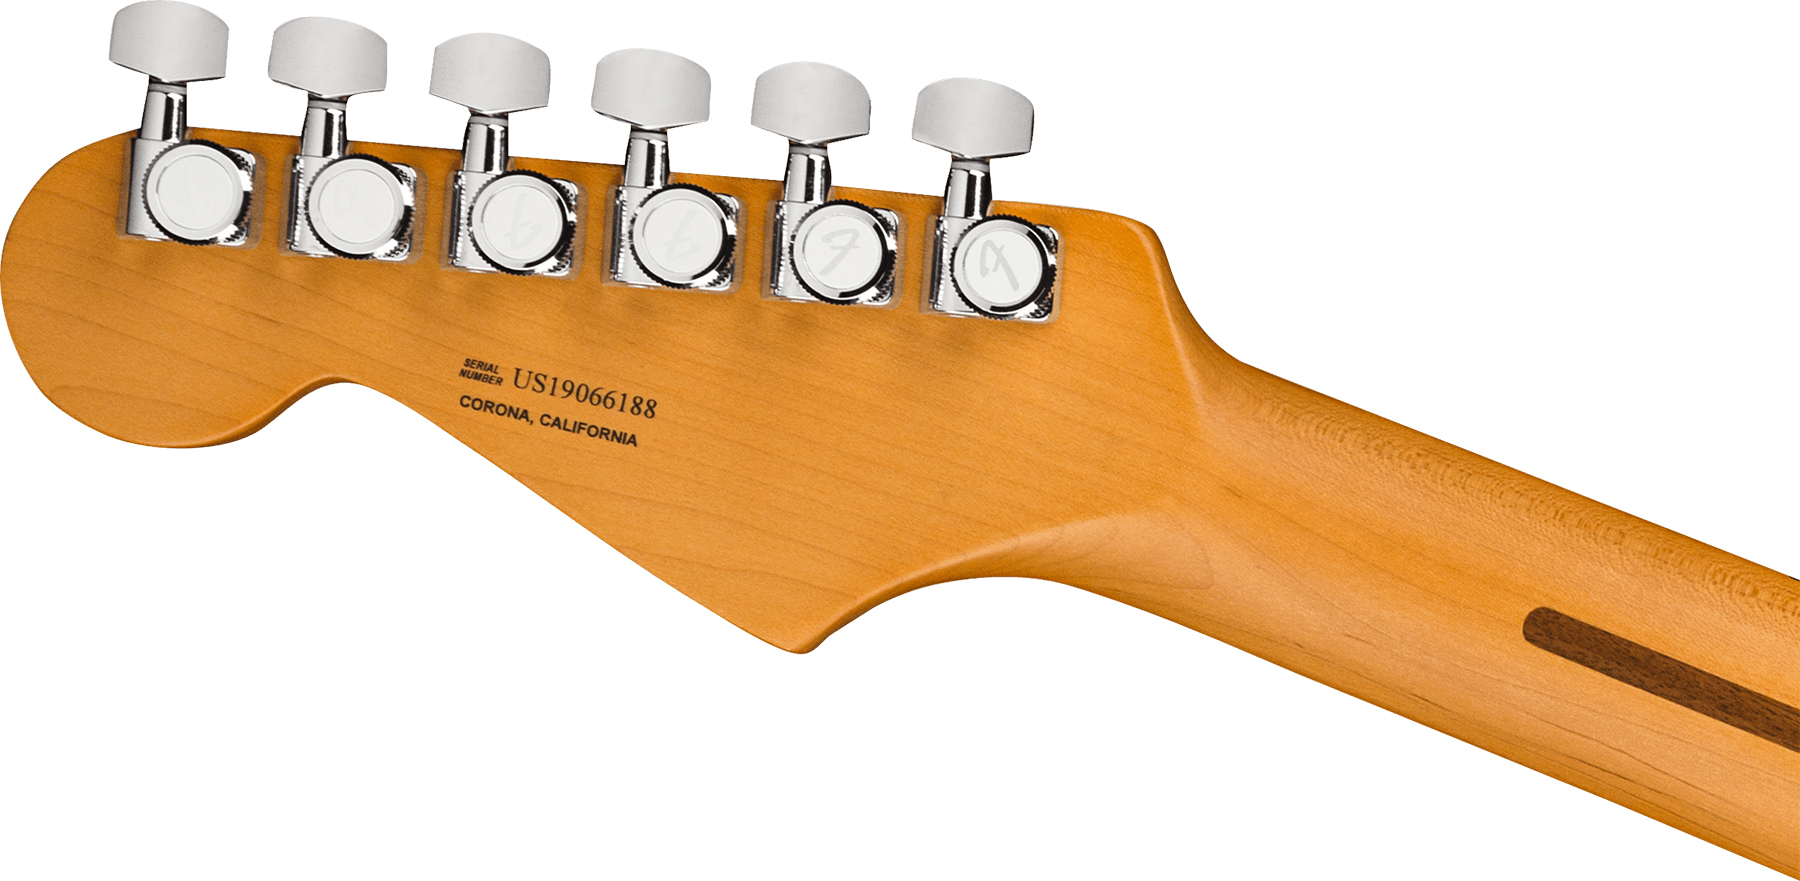 Fender Strat American Ultra 2019 Usa Mn - Texas Tea - E-Gitarre in Str-Form - Variation 3